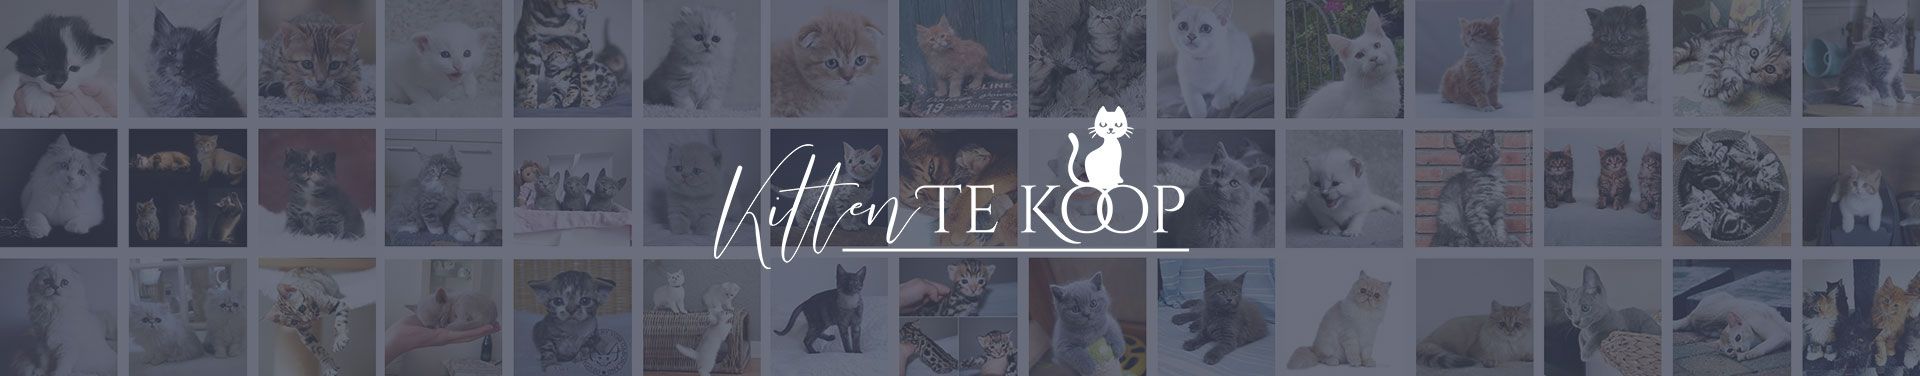 KittenTeKoop